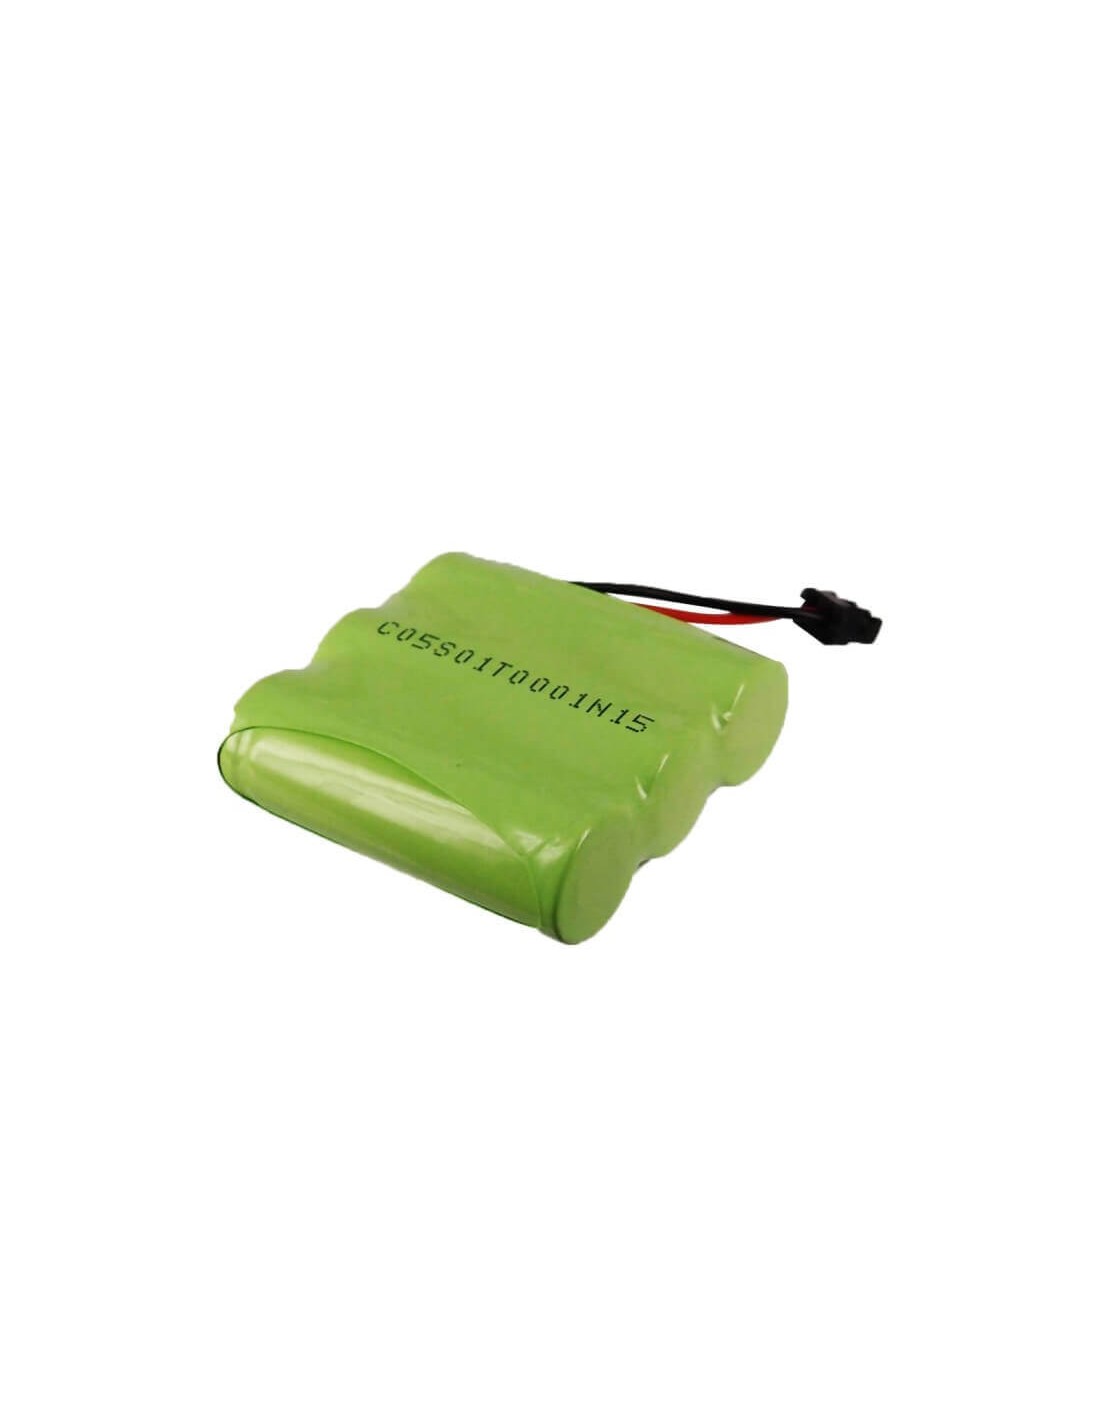 Battery for Sager, Spp-88960 3.6V, 1200mAh - 4.32Wh